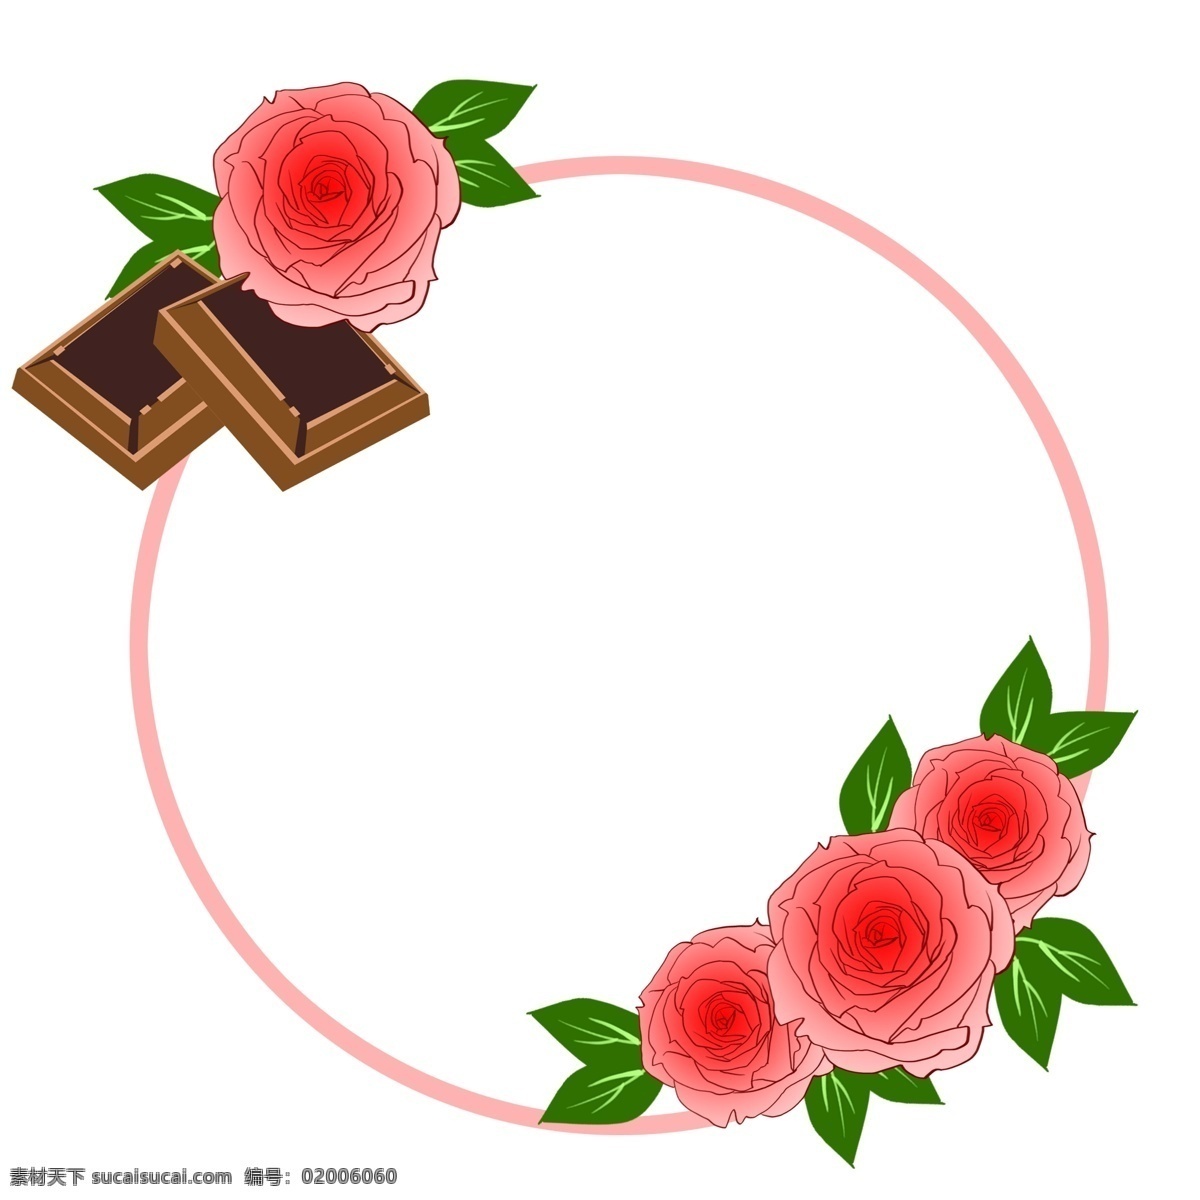 情人节 红色 鲜花 边框 可爱 漂亮 巧克力 卡通鲜花边框 手绘鲜花边框 鲜花边框装饰